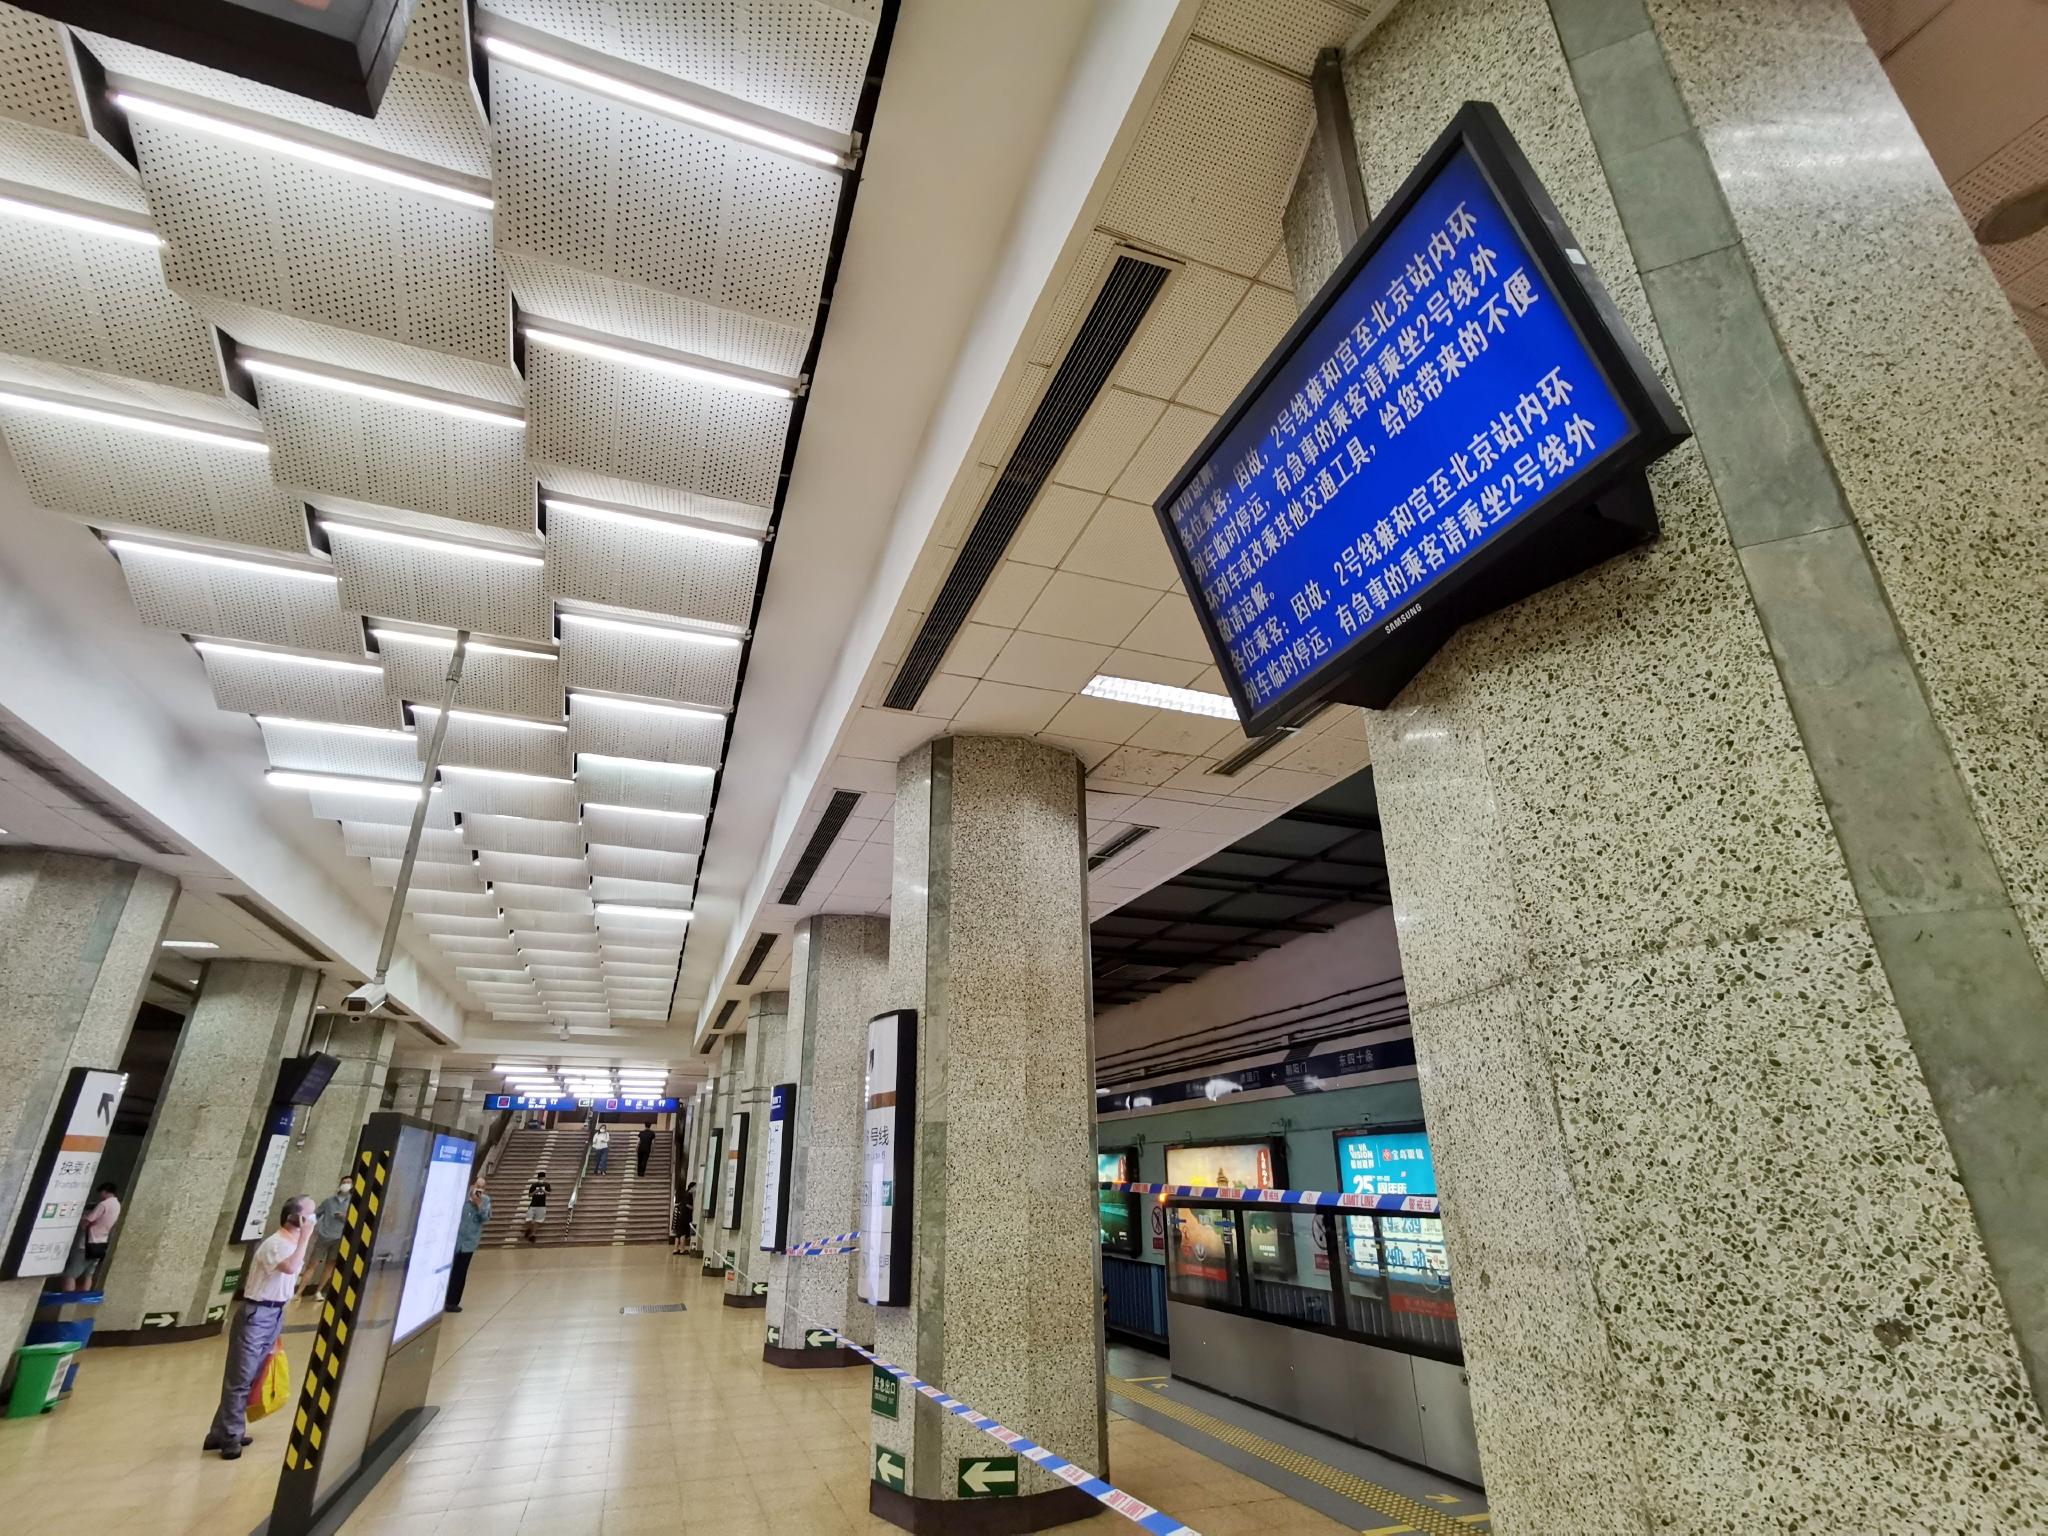 【北京地铁1号线】【转载】 DKZ4G-S402建国门上行进站